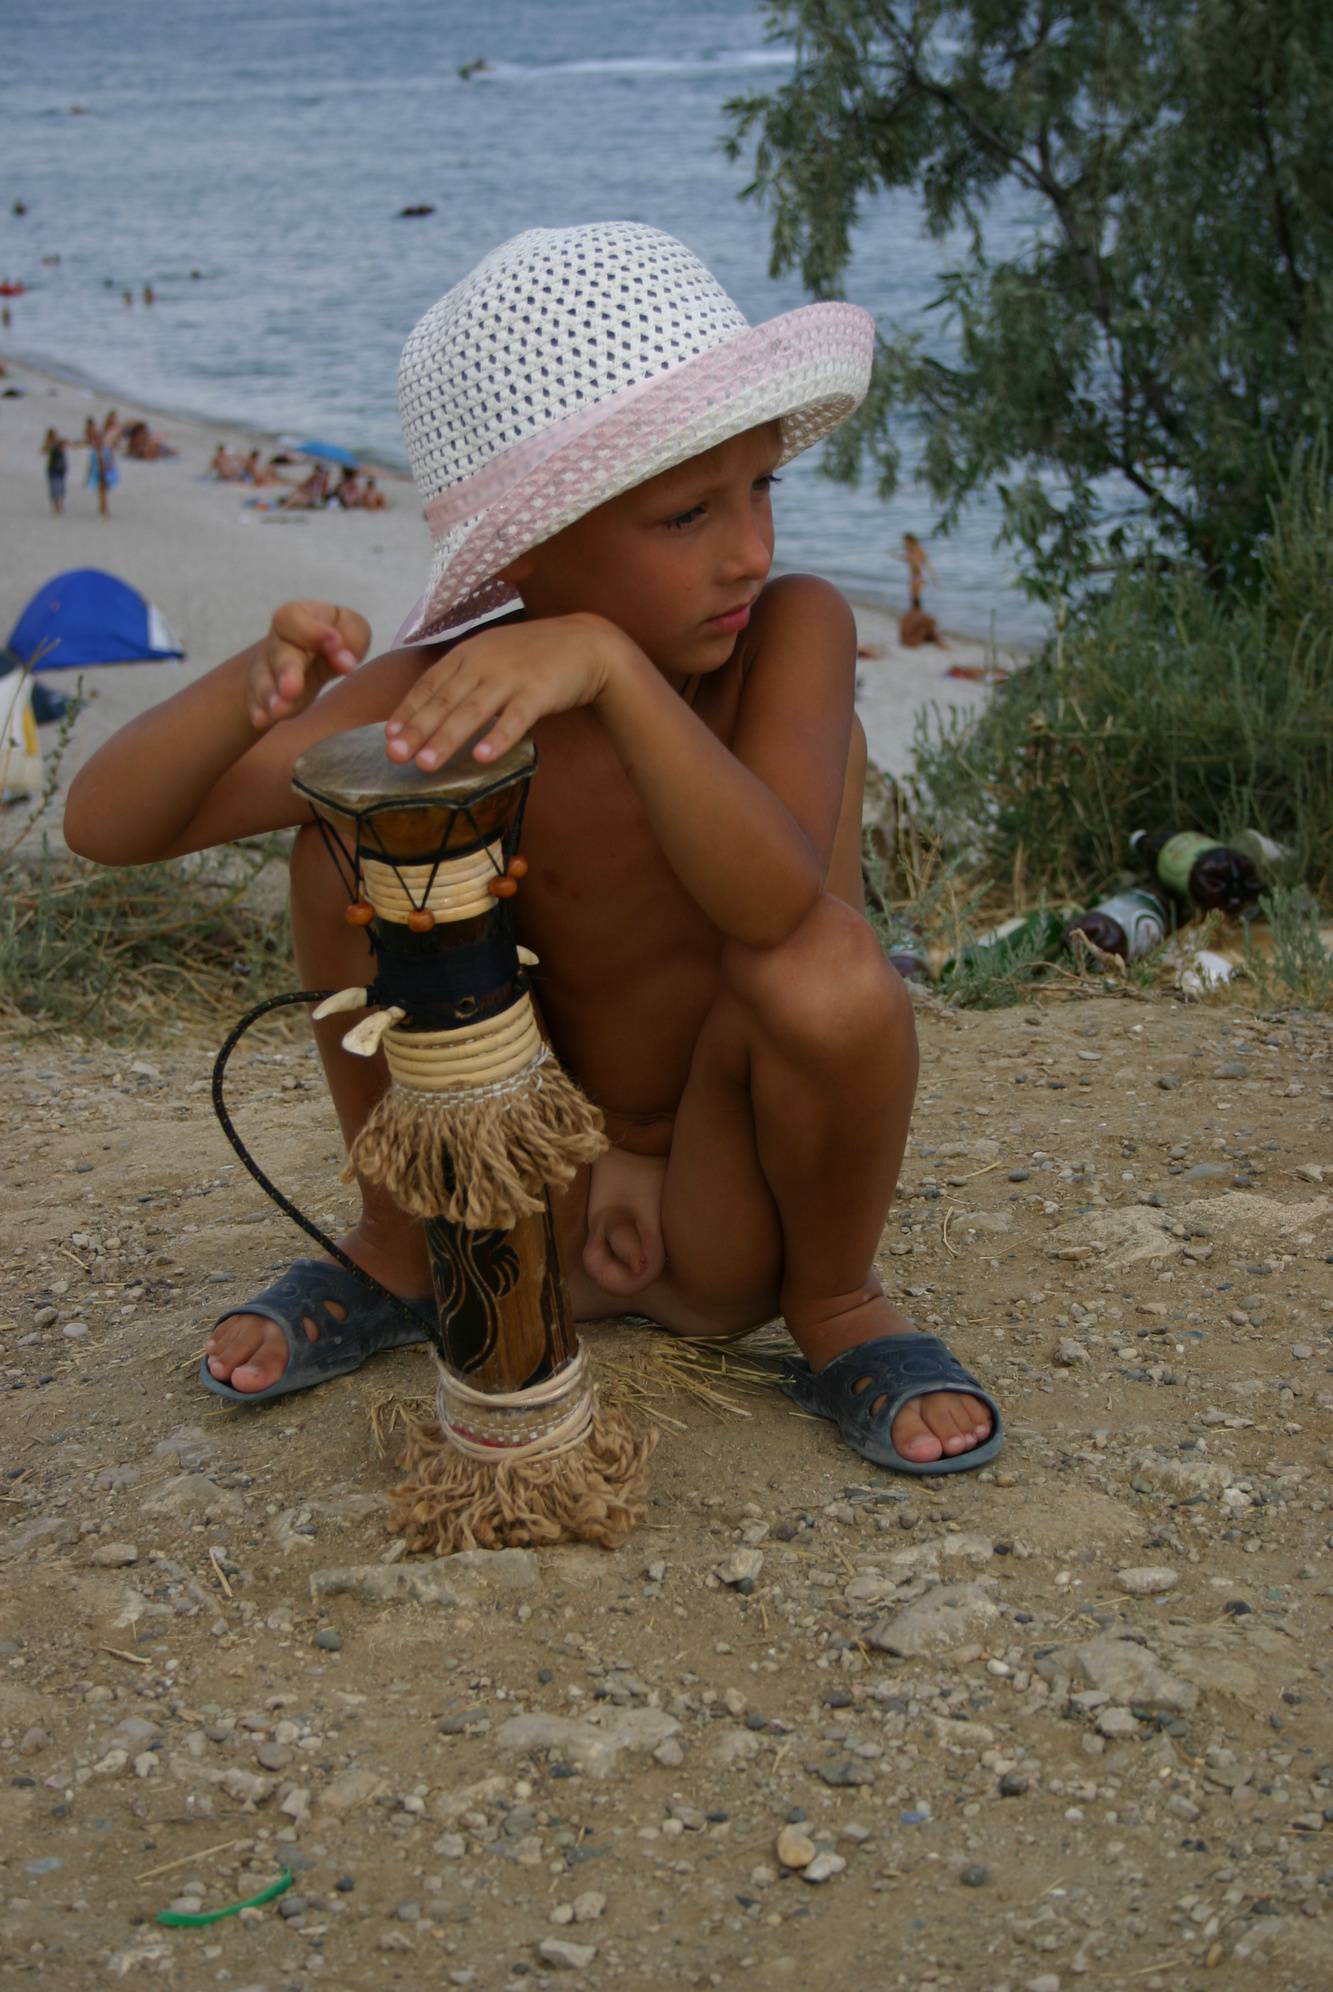 Crimea Nudist Drum Show - 1